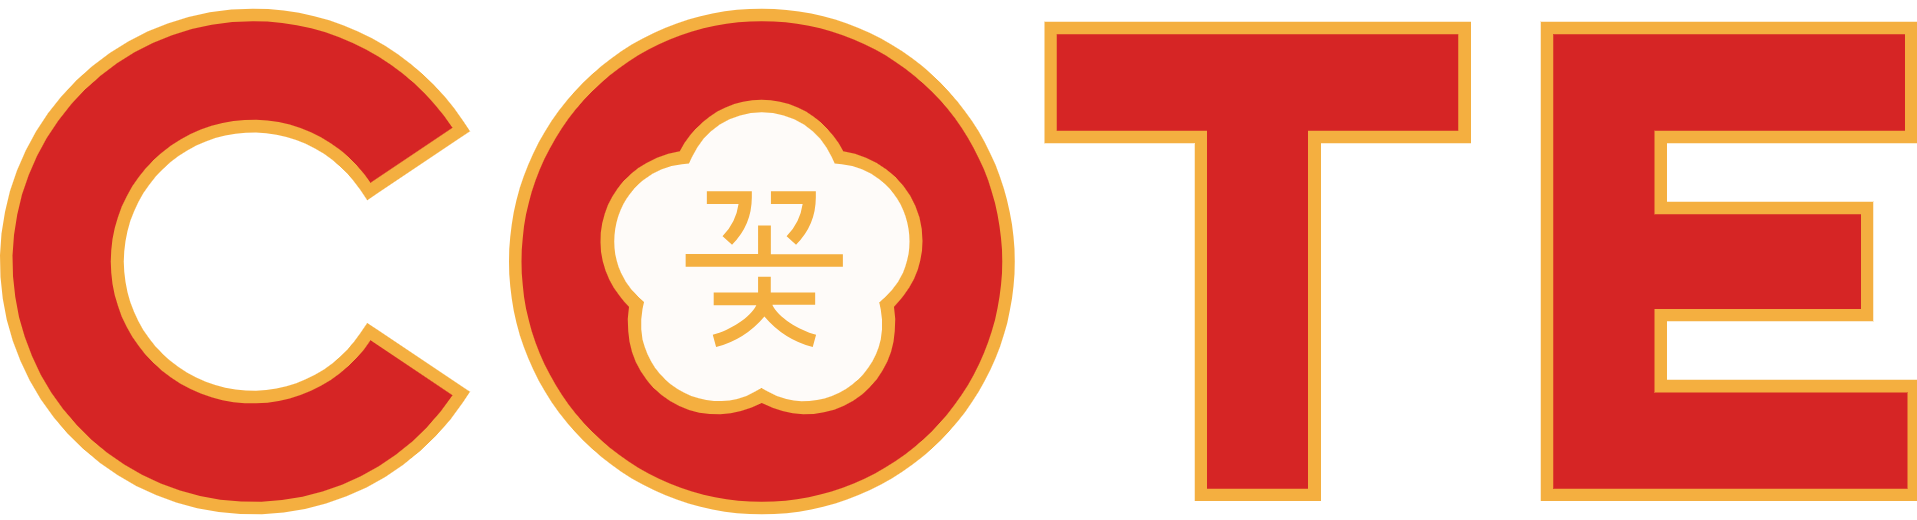 Korean Steakhouse Ecommerce Logo